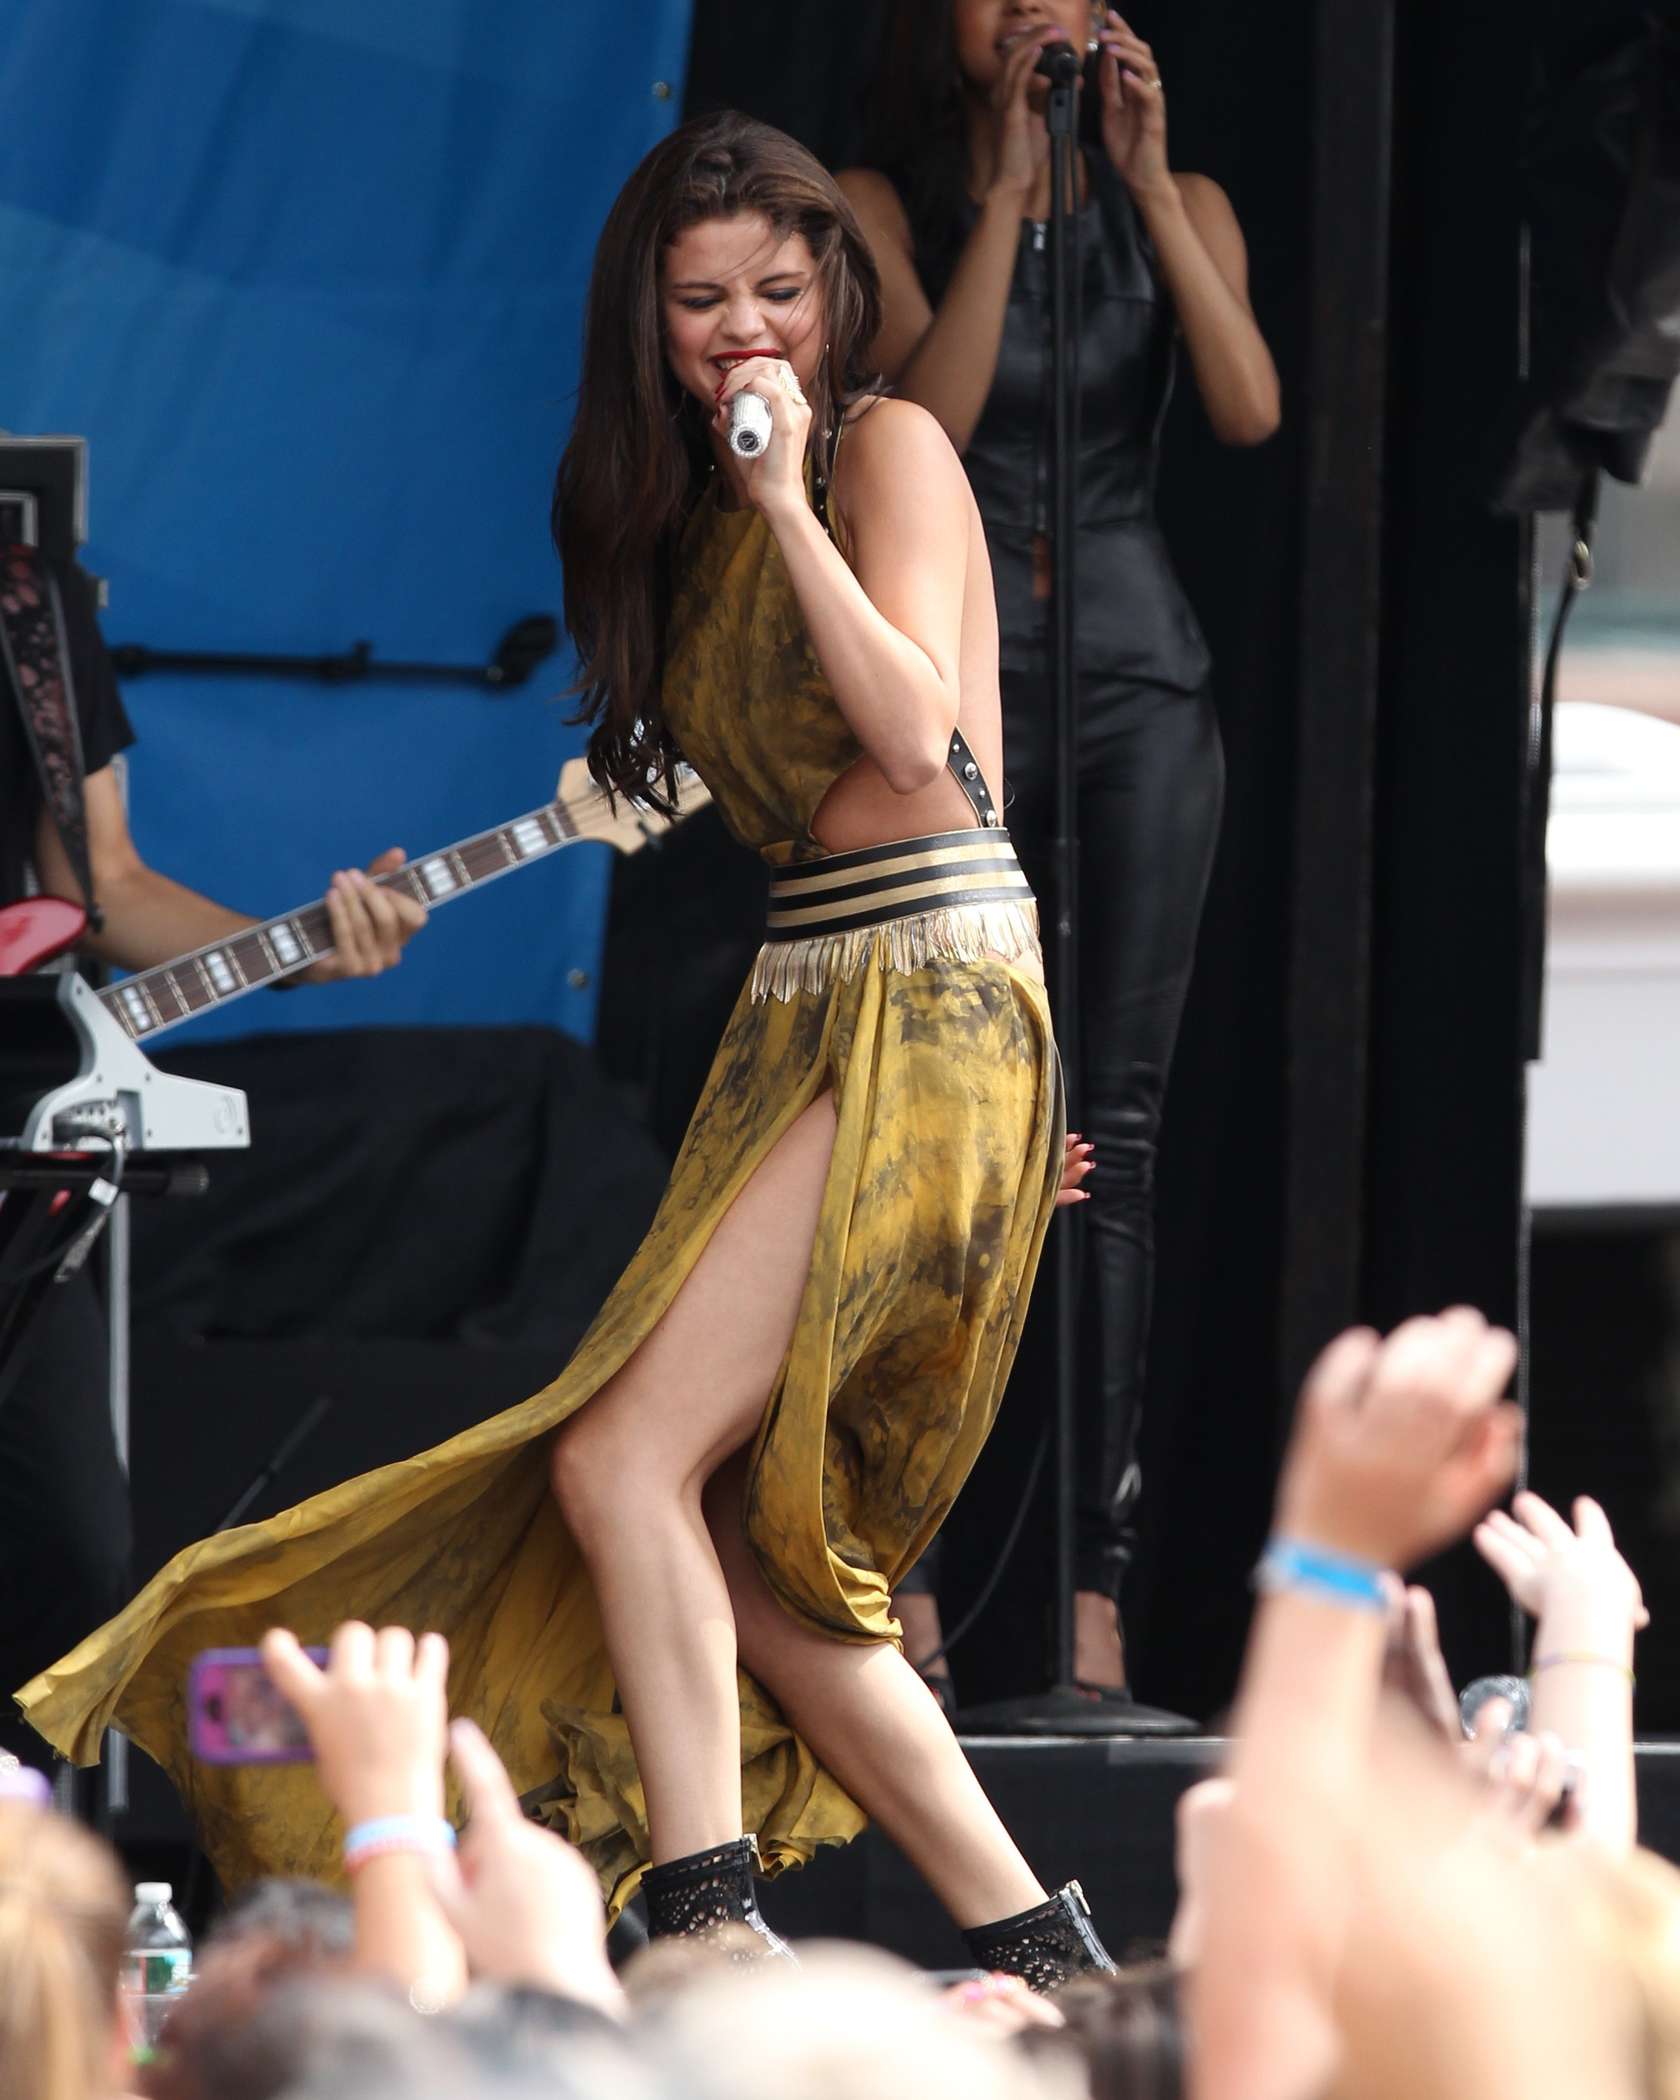 Selena Gomez Malfunction